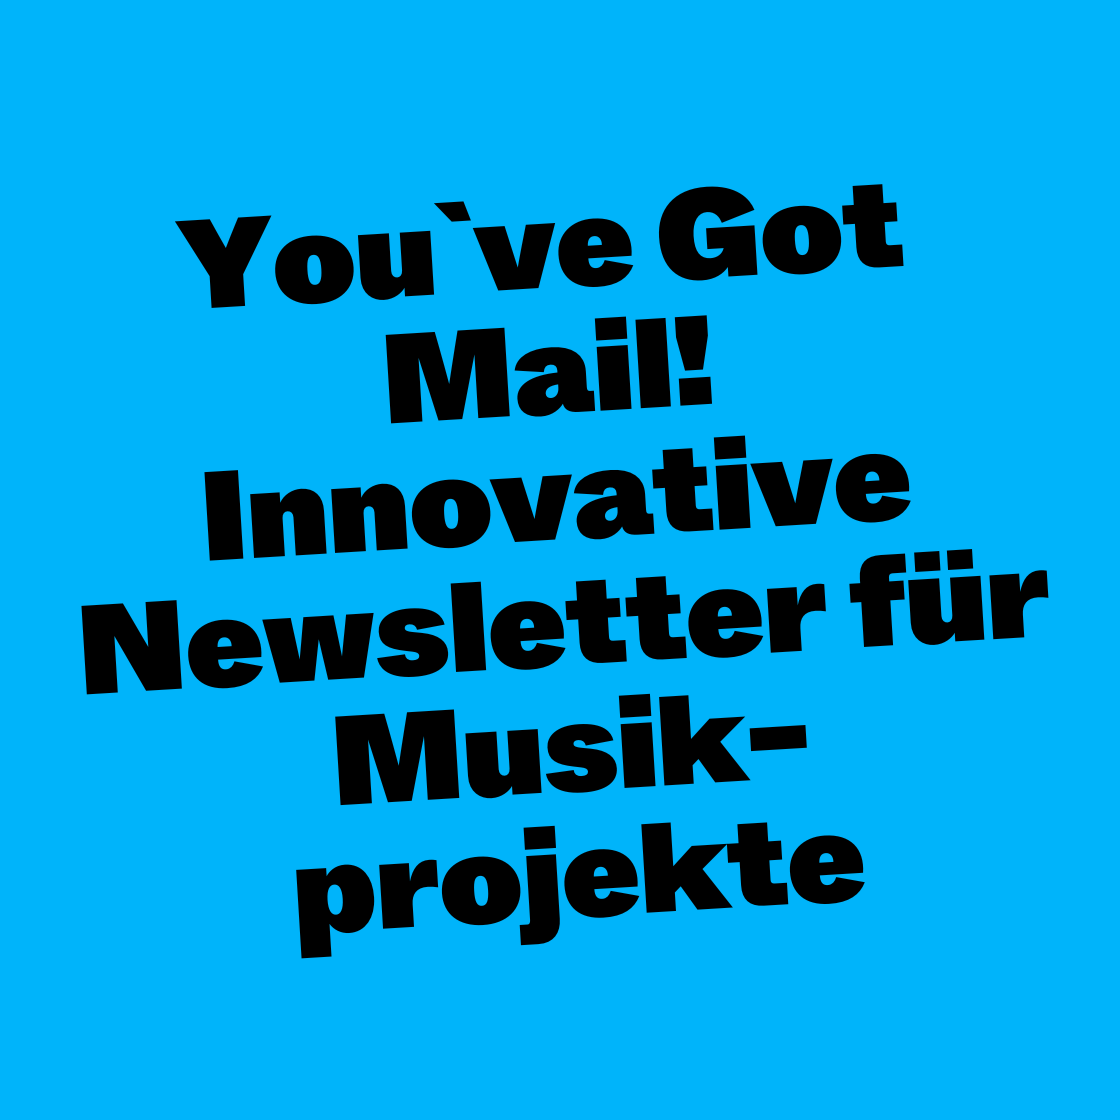 You've Got Mail! Innovative Newsletter für Musikprojekte